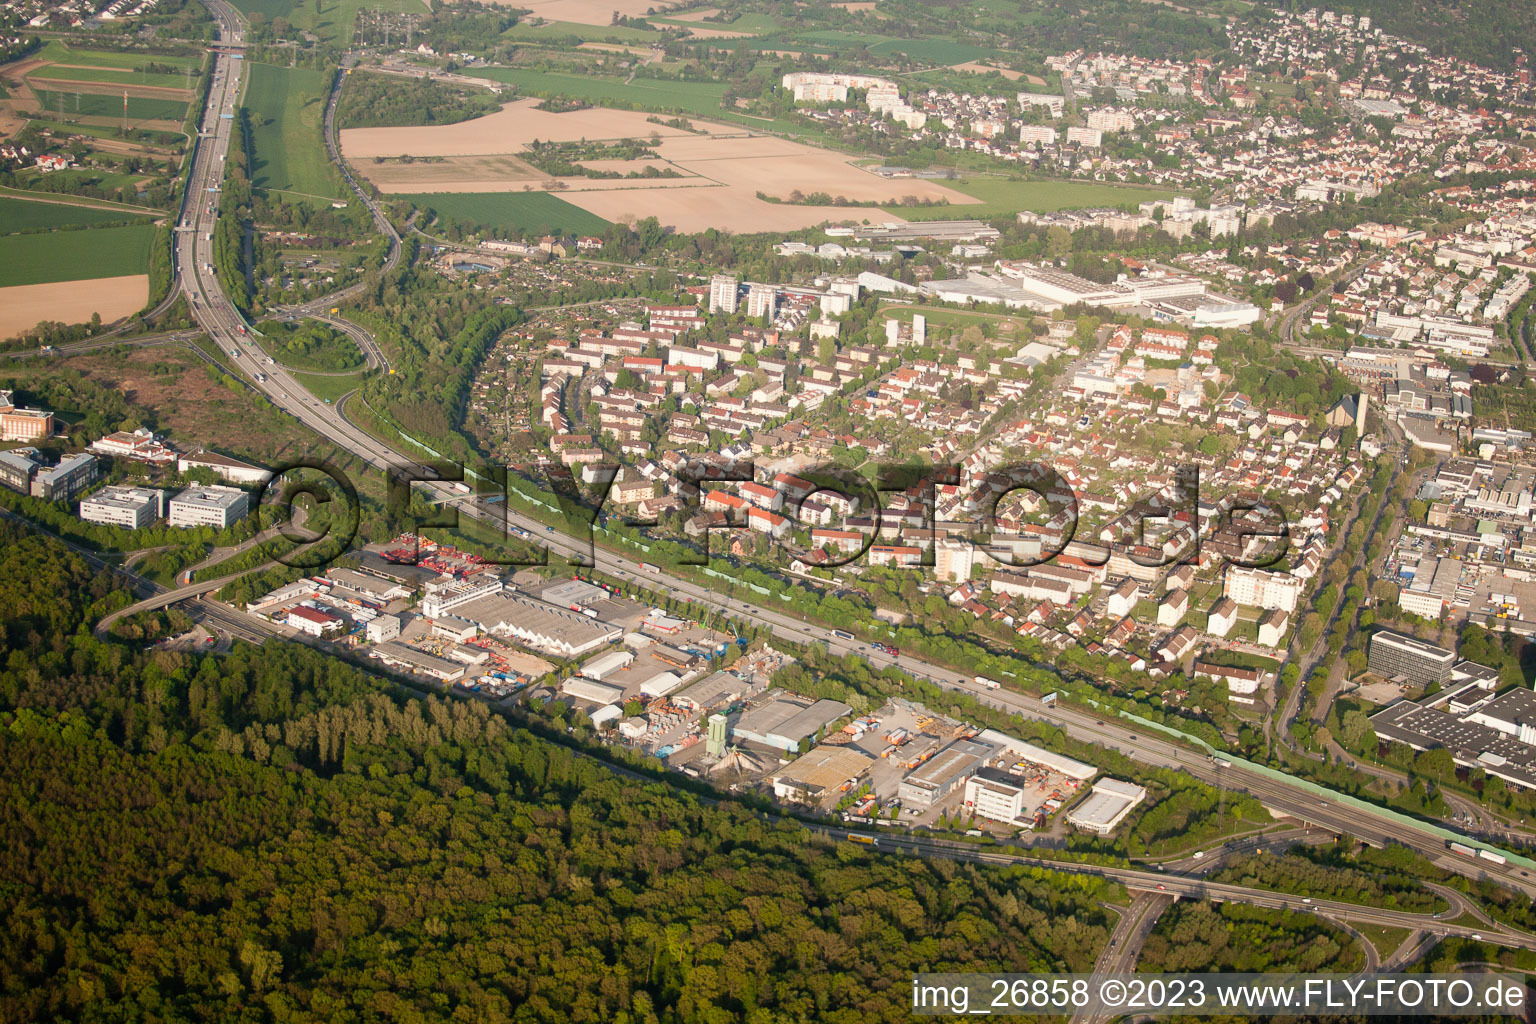 Vue aérienne de Zone industrielle ouest à Ettlingen dans le département Bade-Wurtemberg, Allemagne